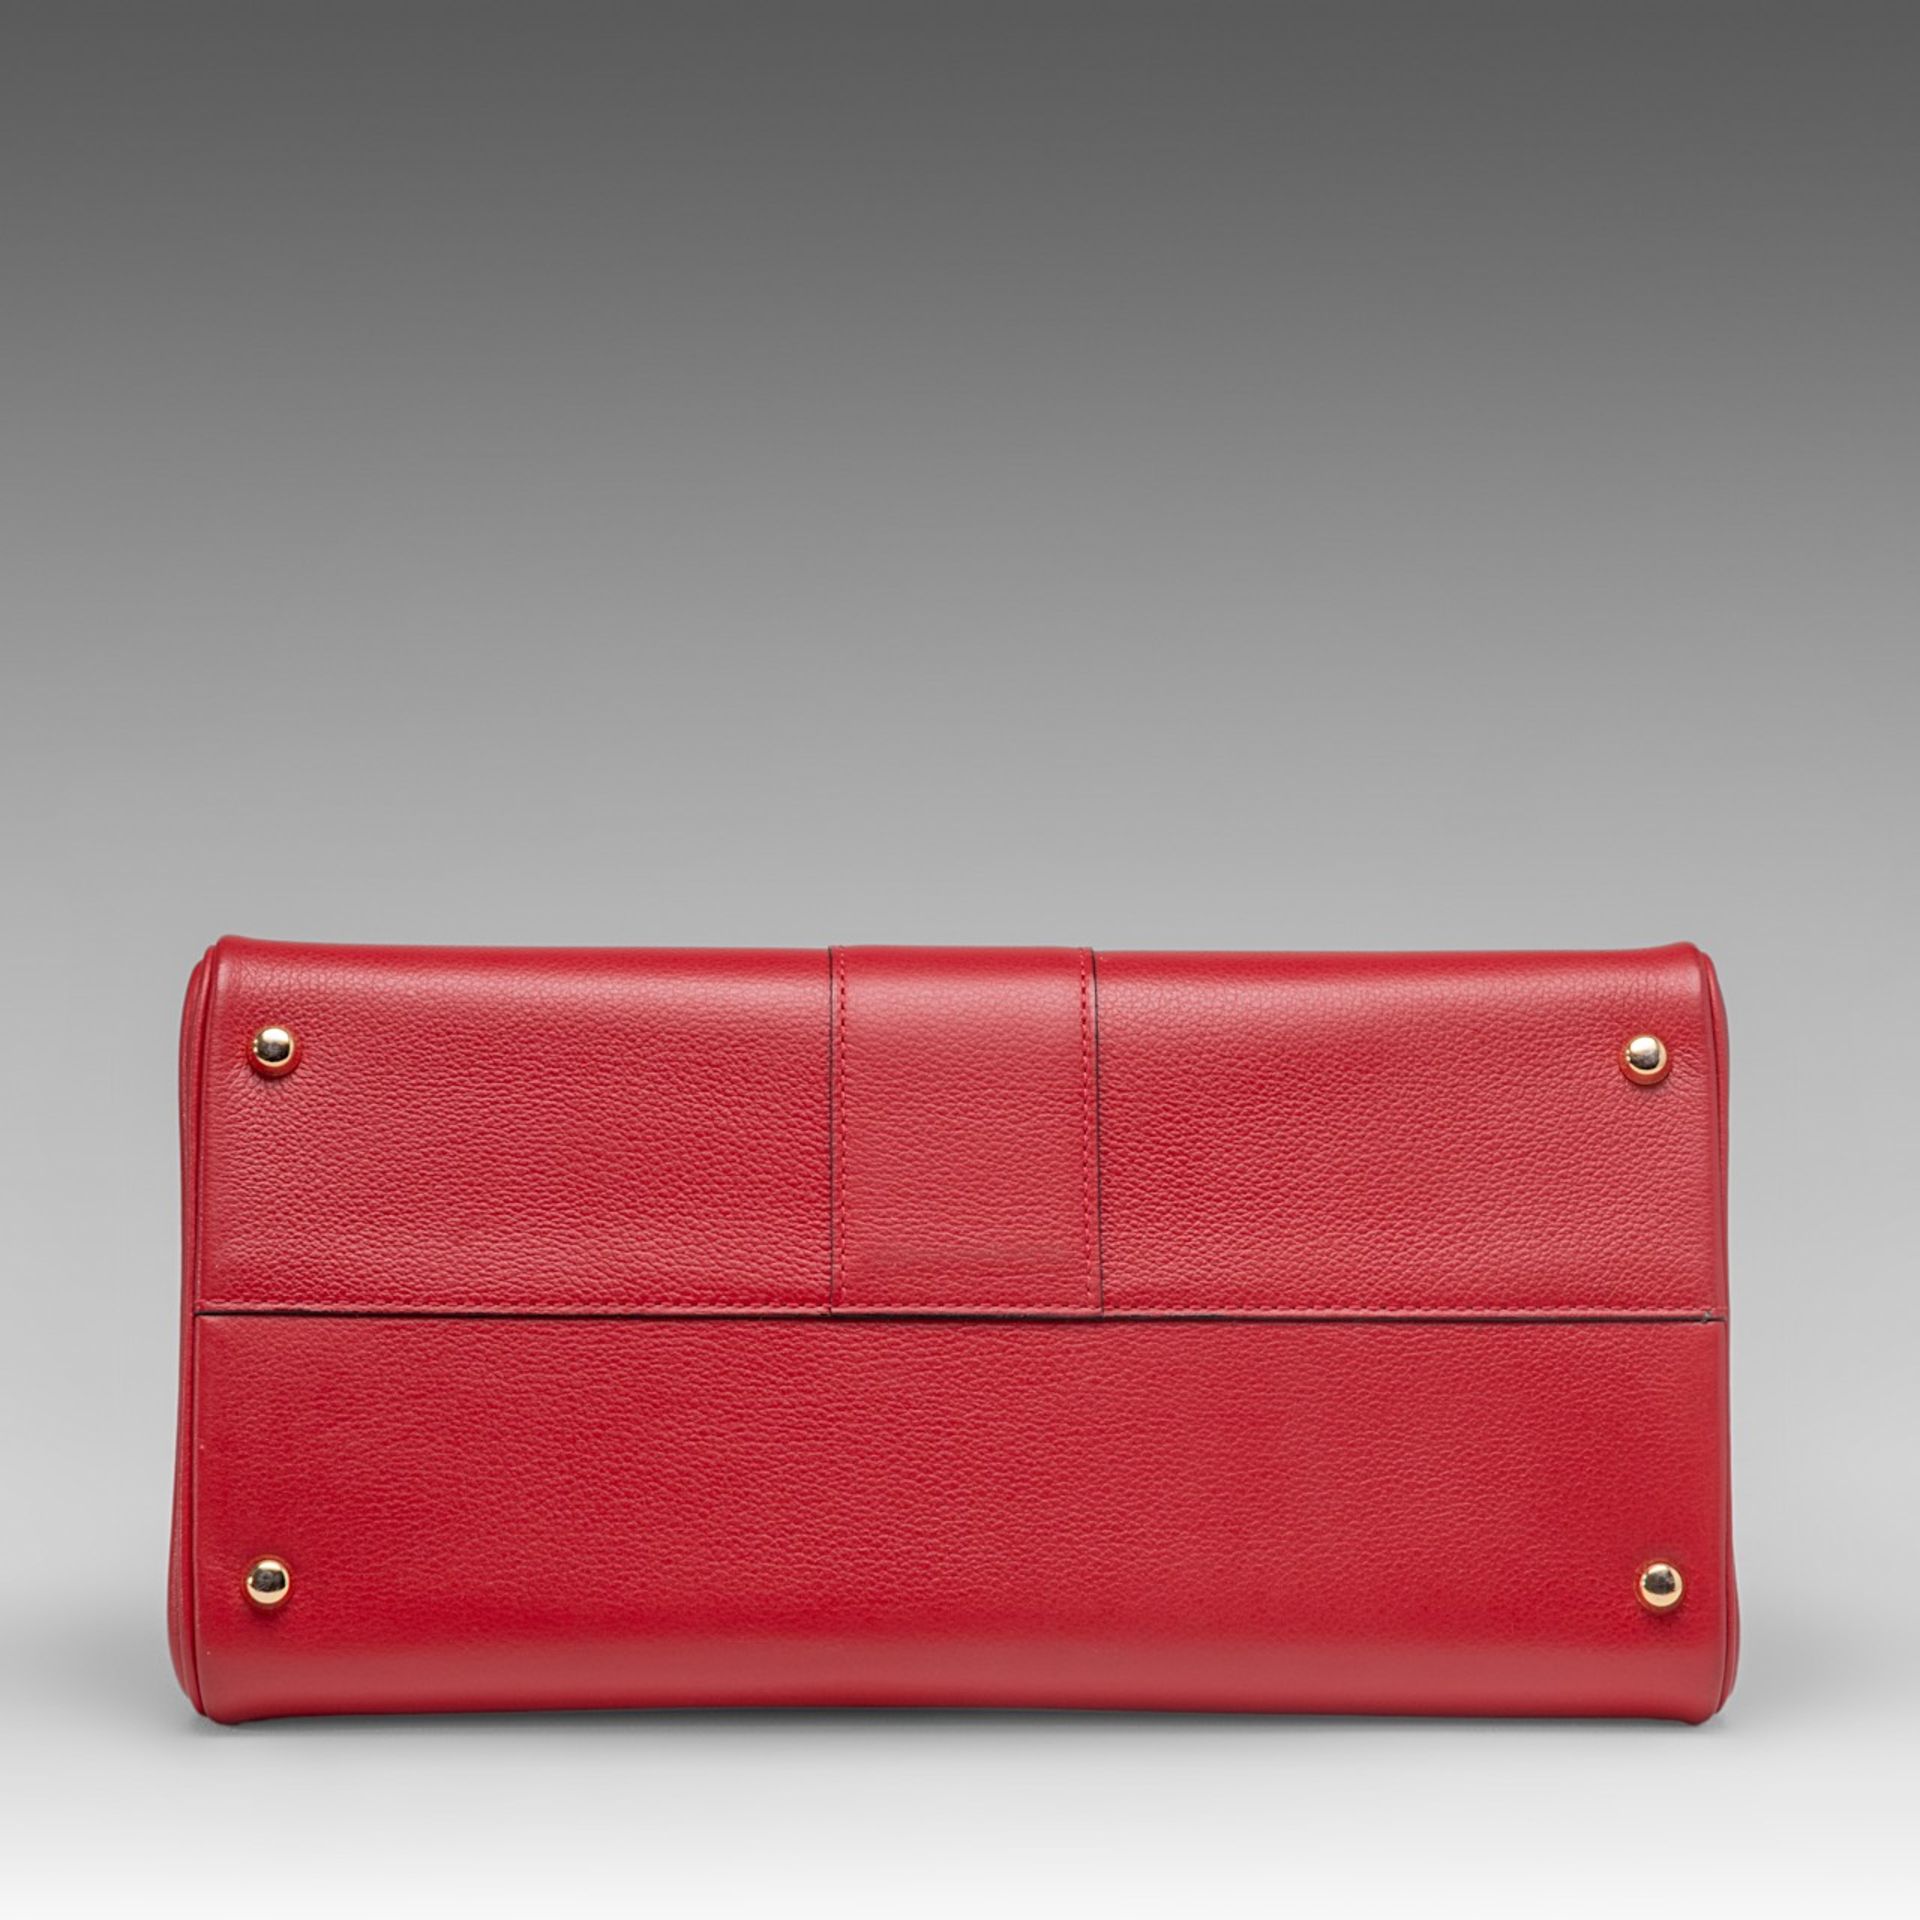 A Delvaux Brillant MM red leather handbag, H 21,5 - W 29 - D 13,5 cm - Bild 7 aus 14